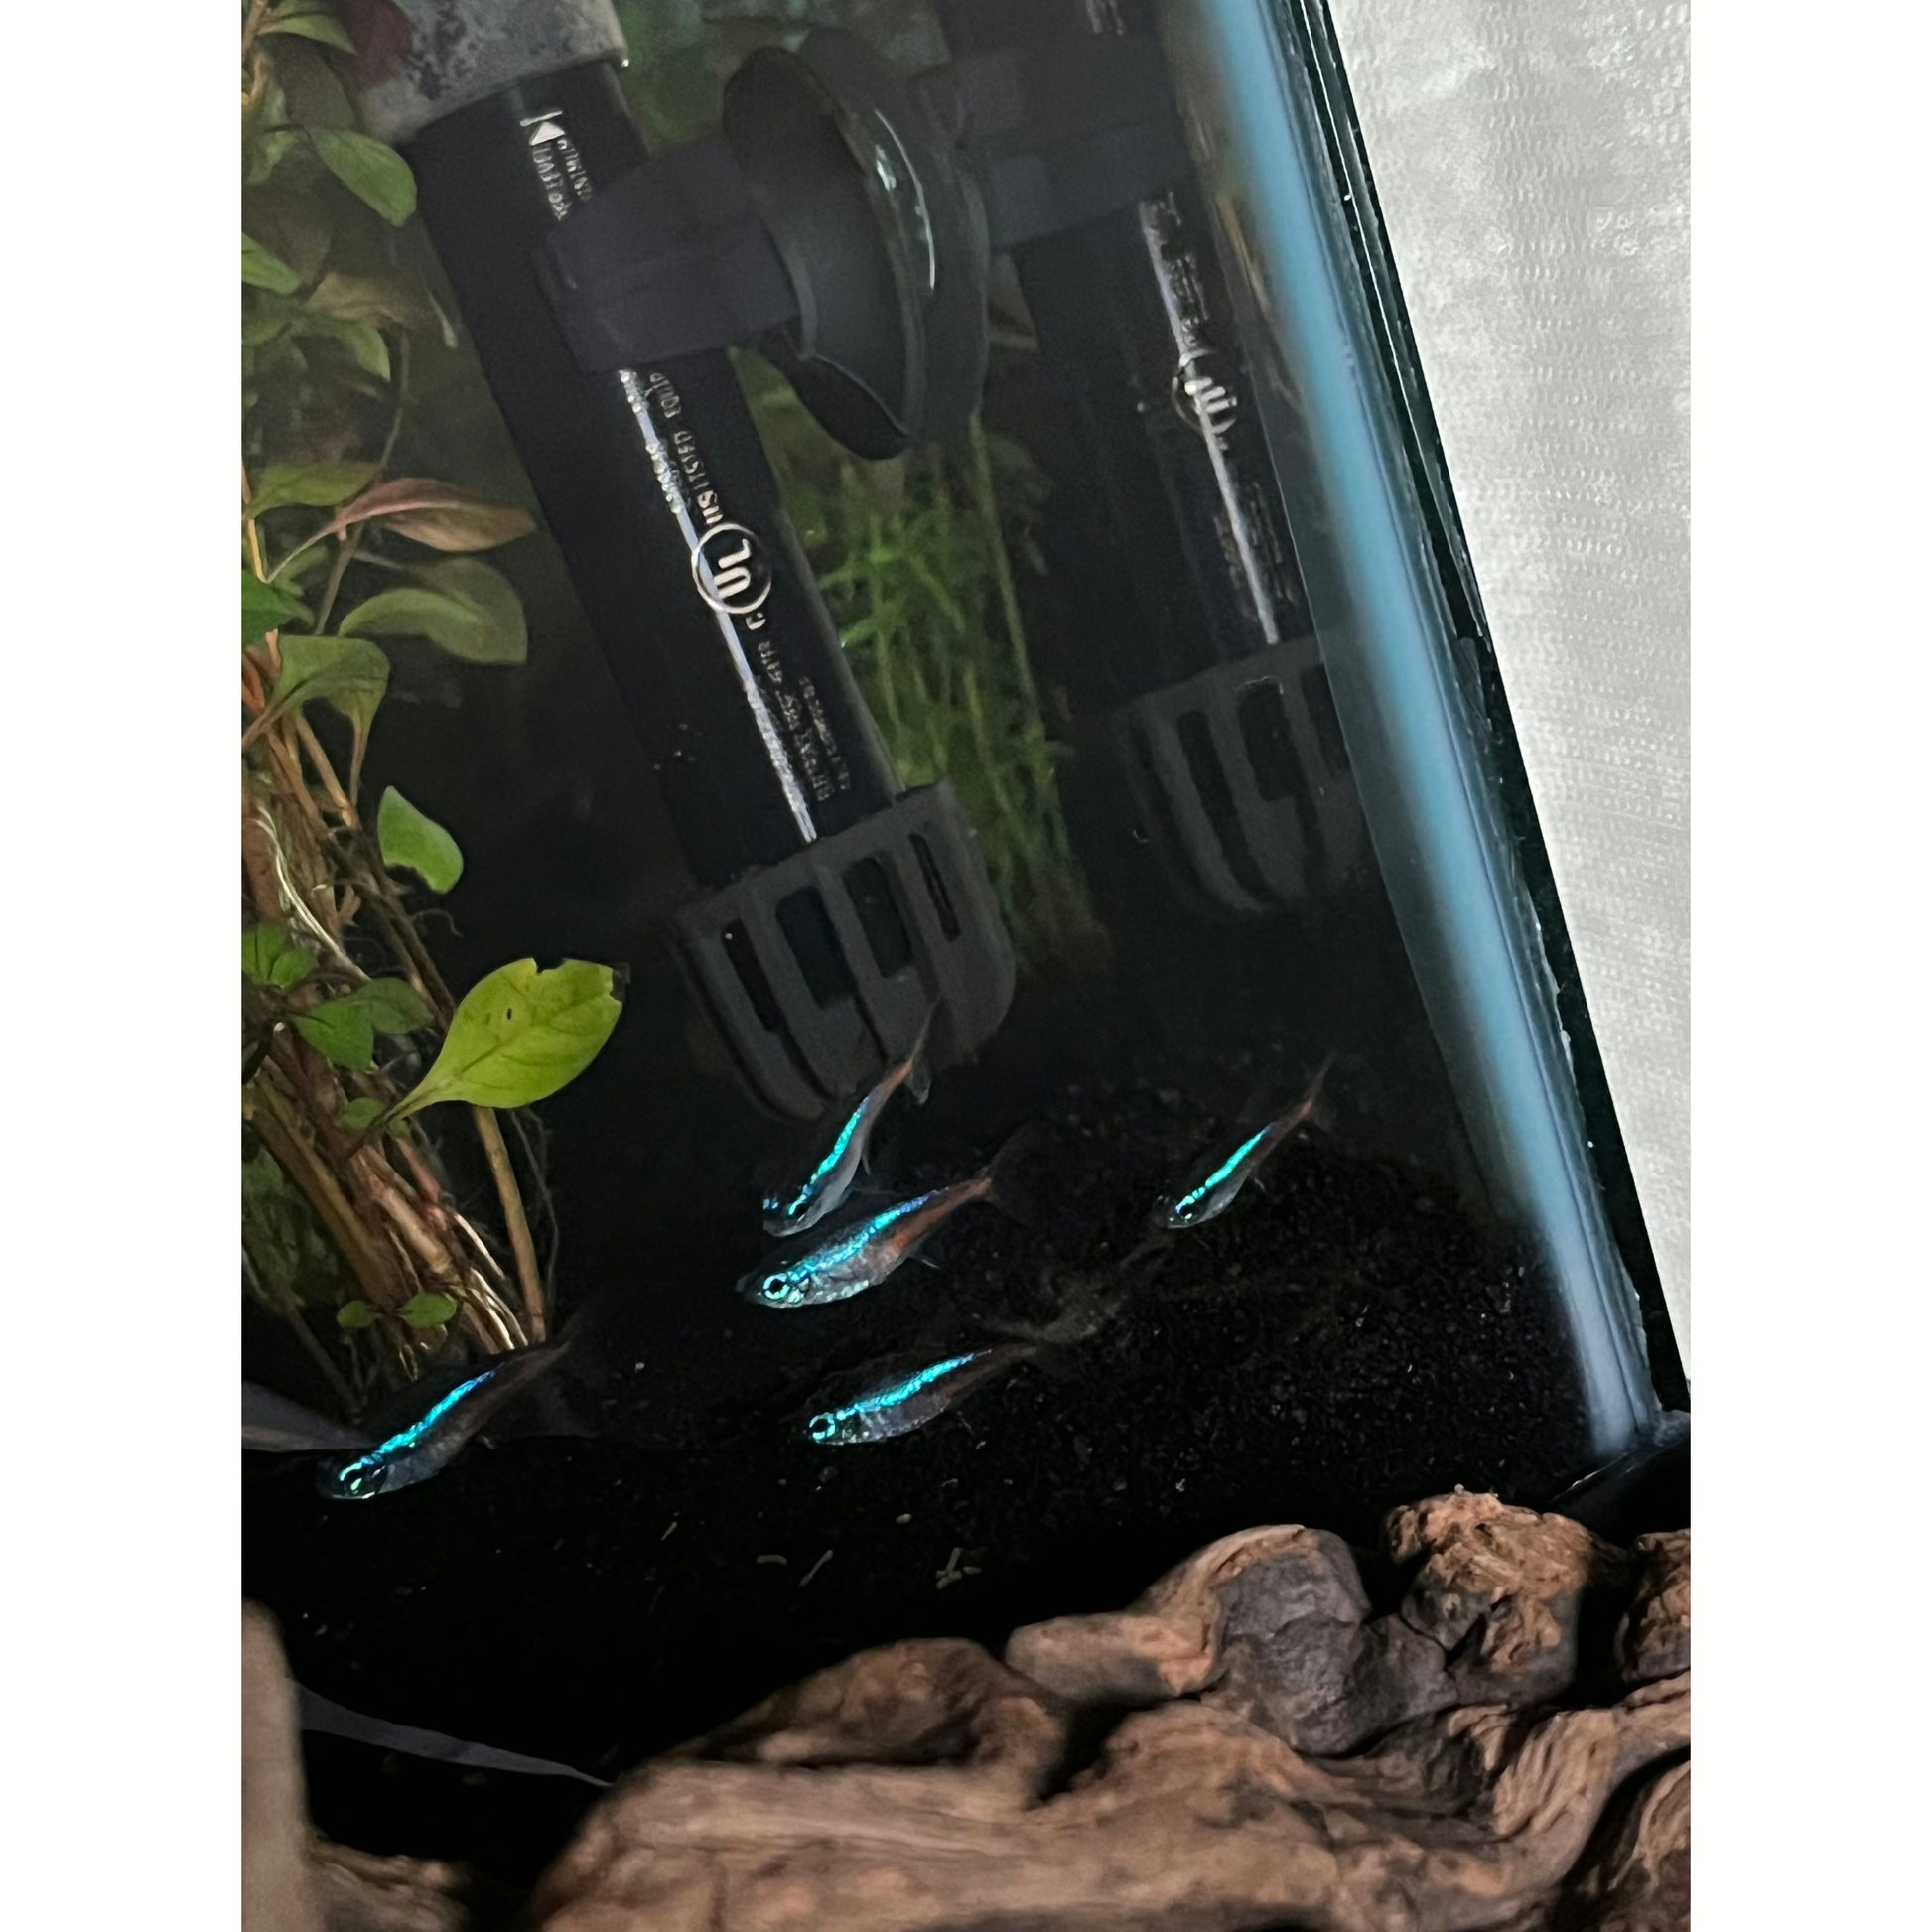 Neon Tetra - YoCamron’s Aquatics